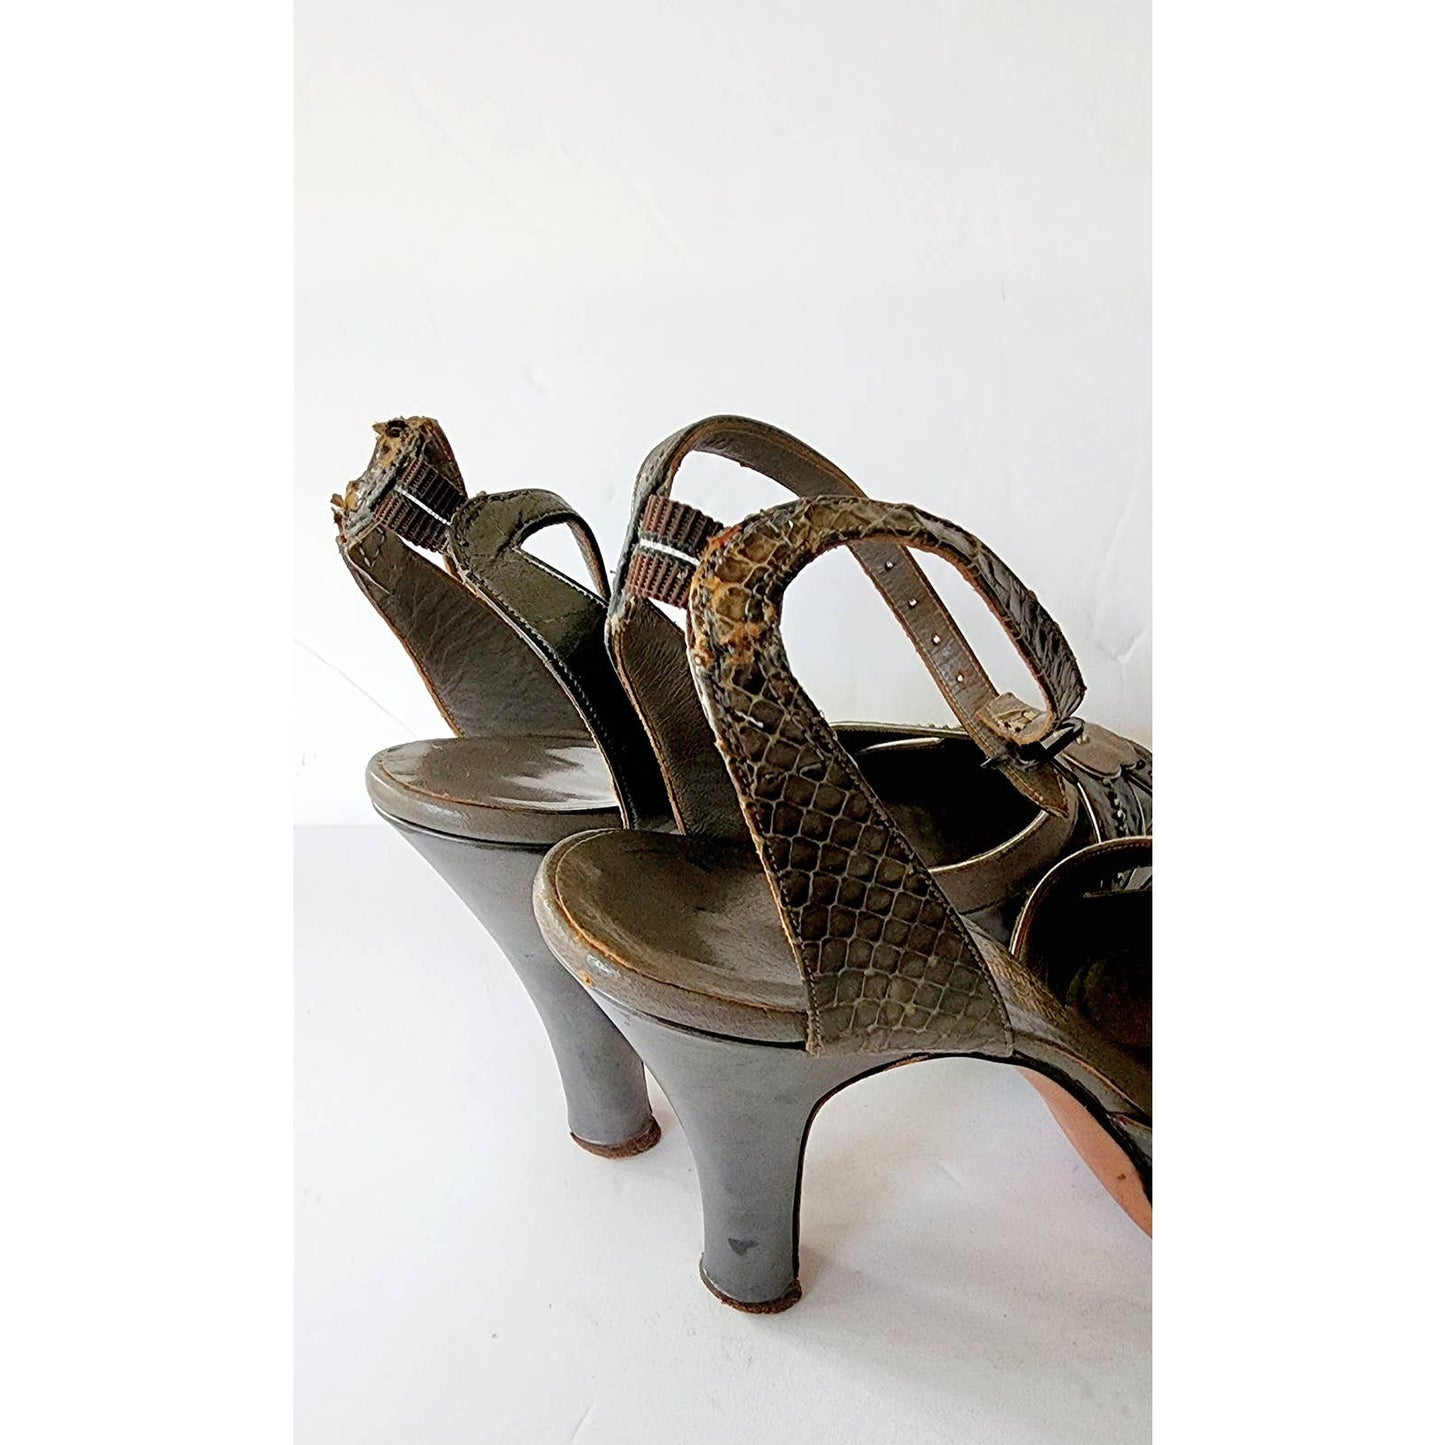 Vintage 40s High Heel Platform Shoes Maryjanes Gray Silver Floral Manning Original